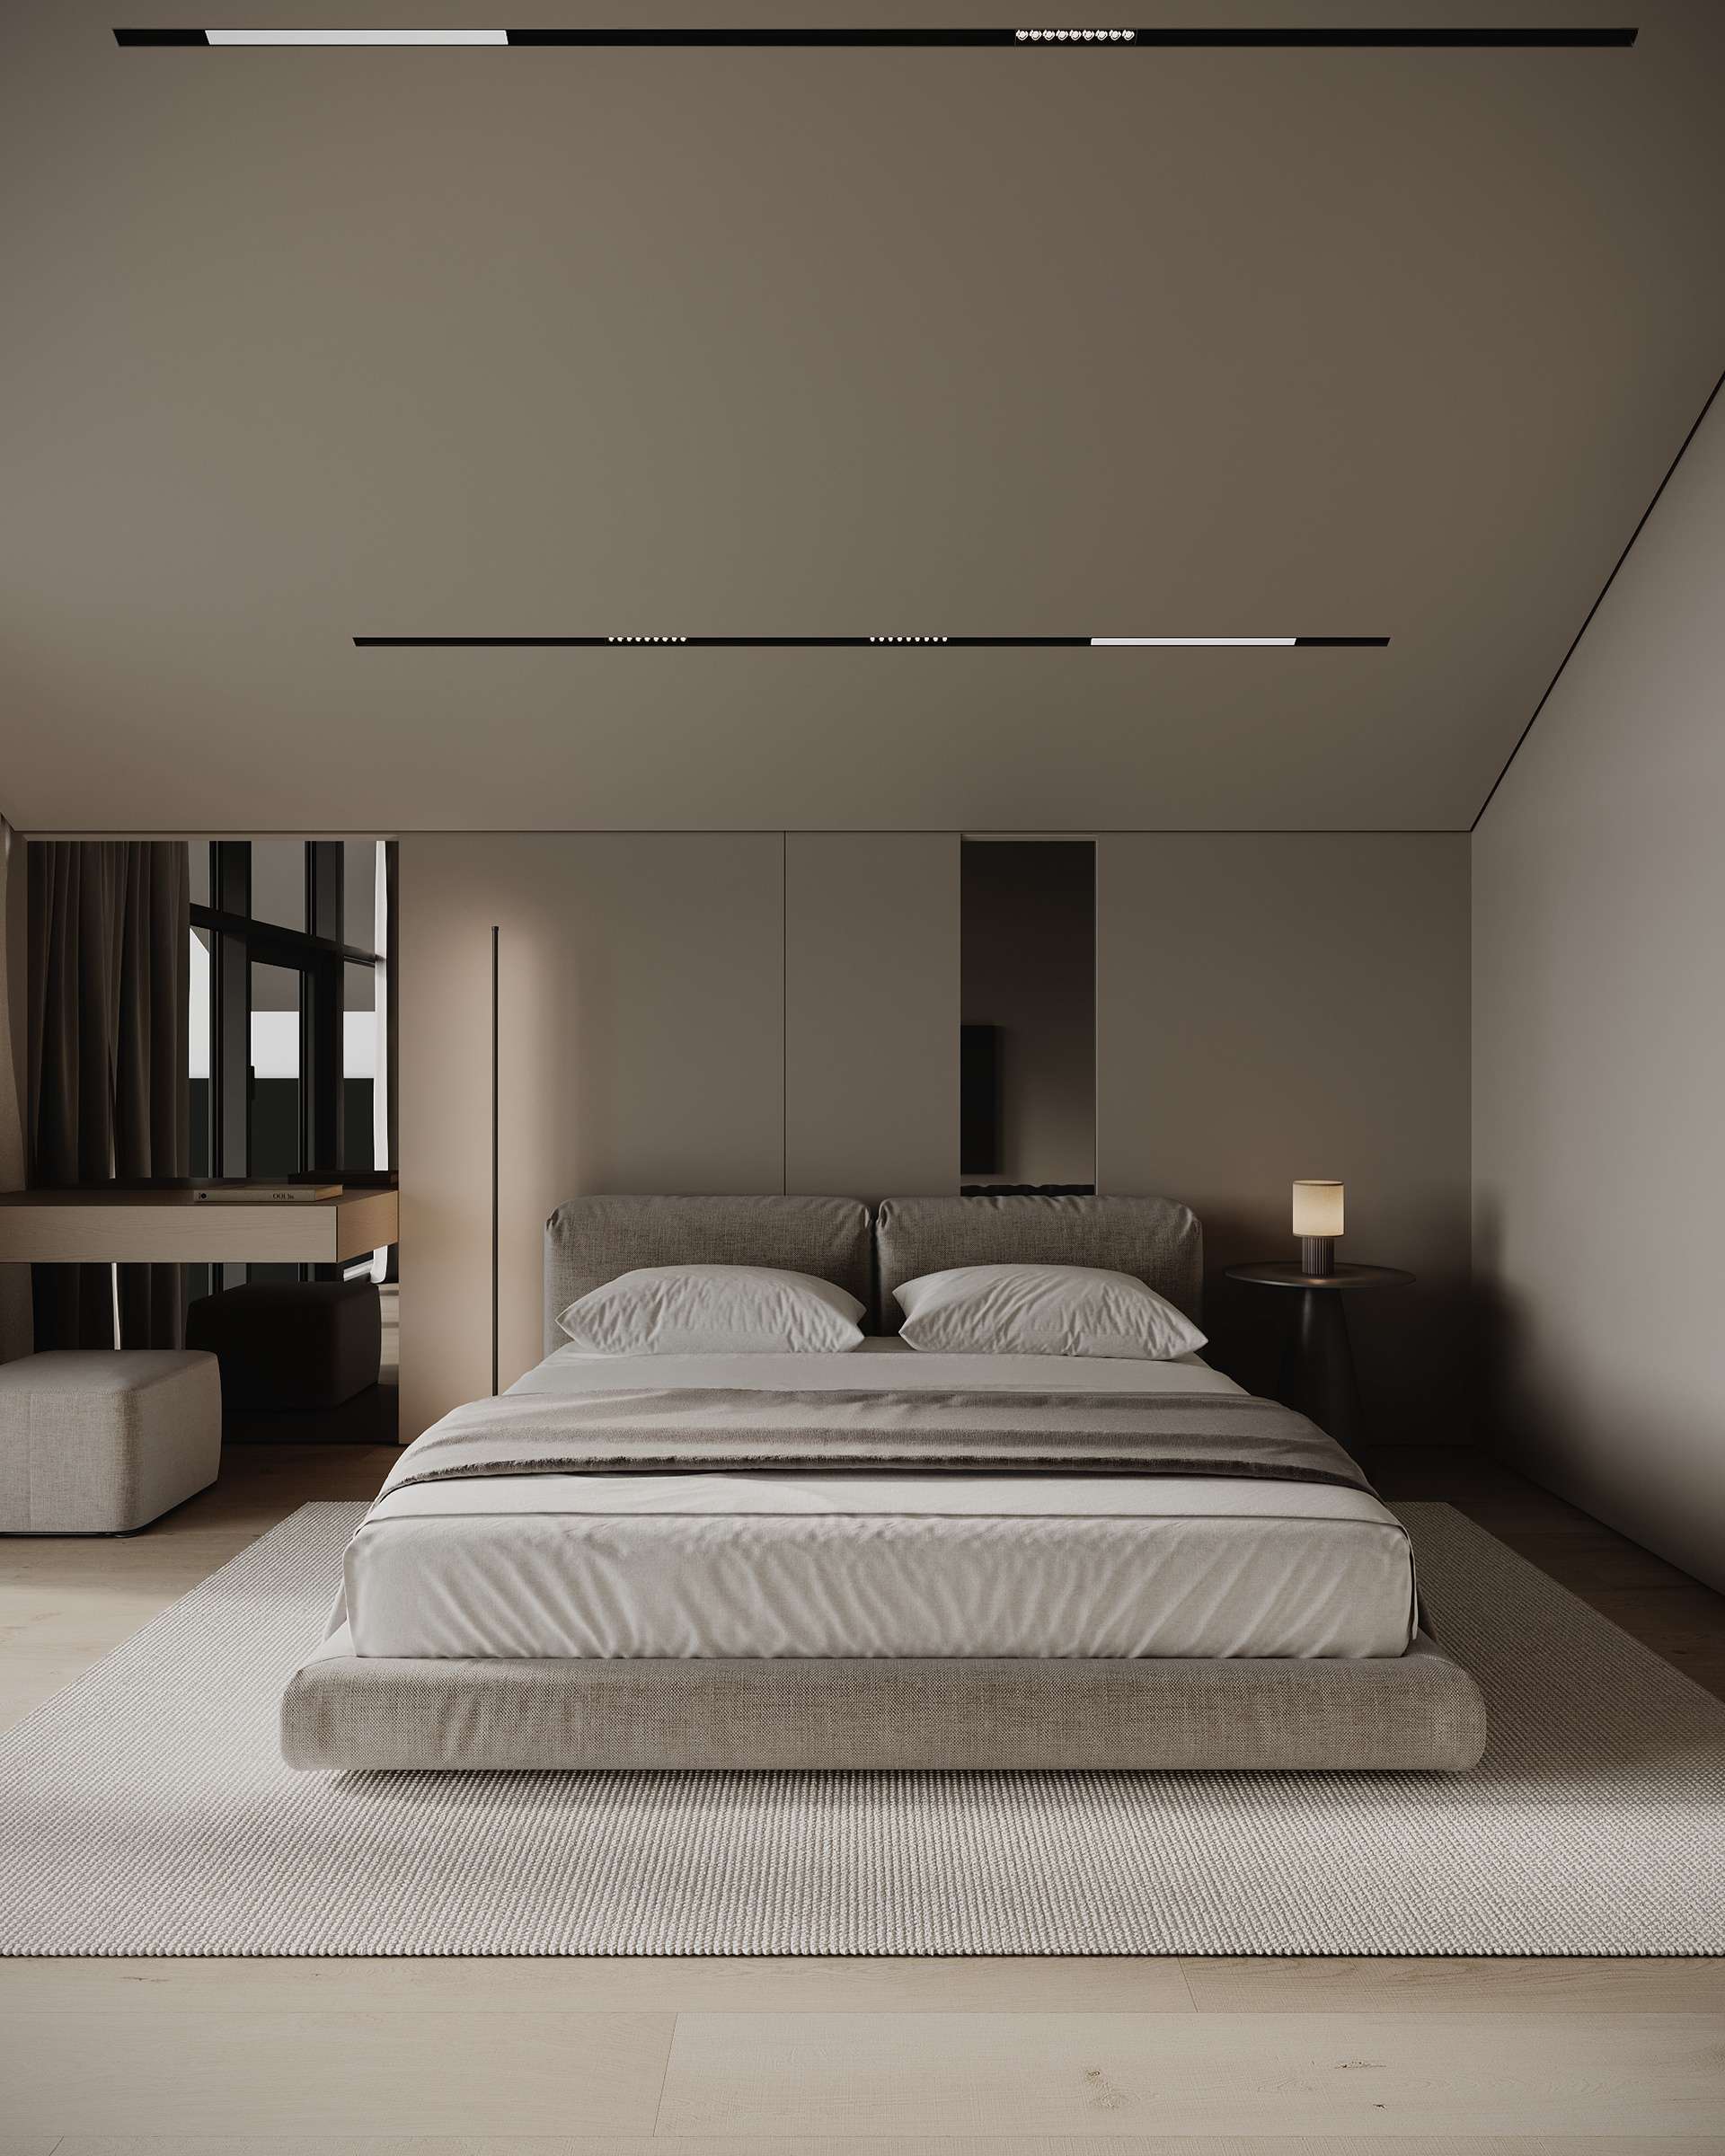 Phòng ngủ tiện nghi, hiện đại được thiết kế theo phong cách tối giản